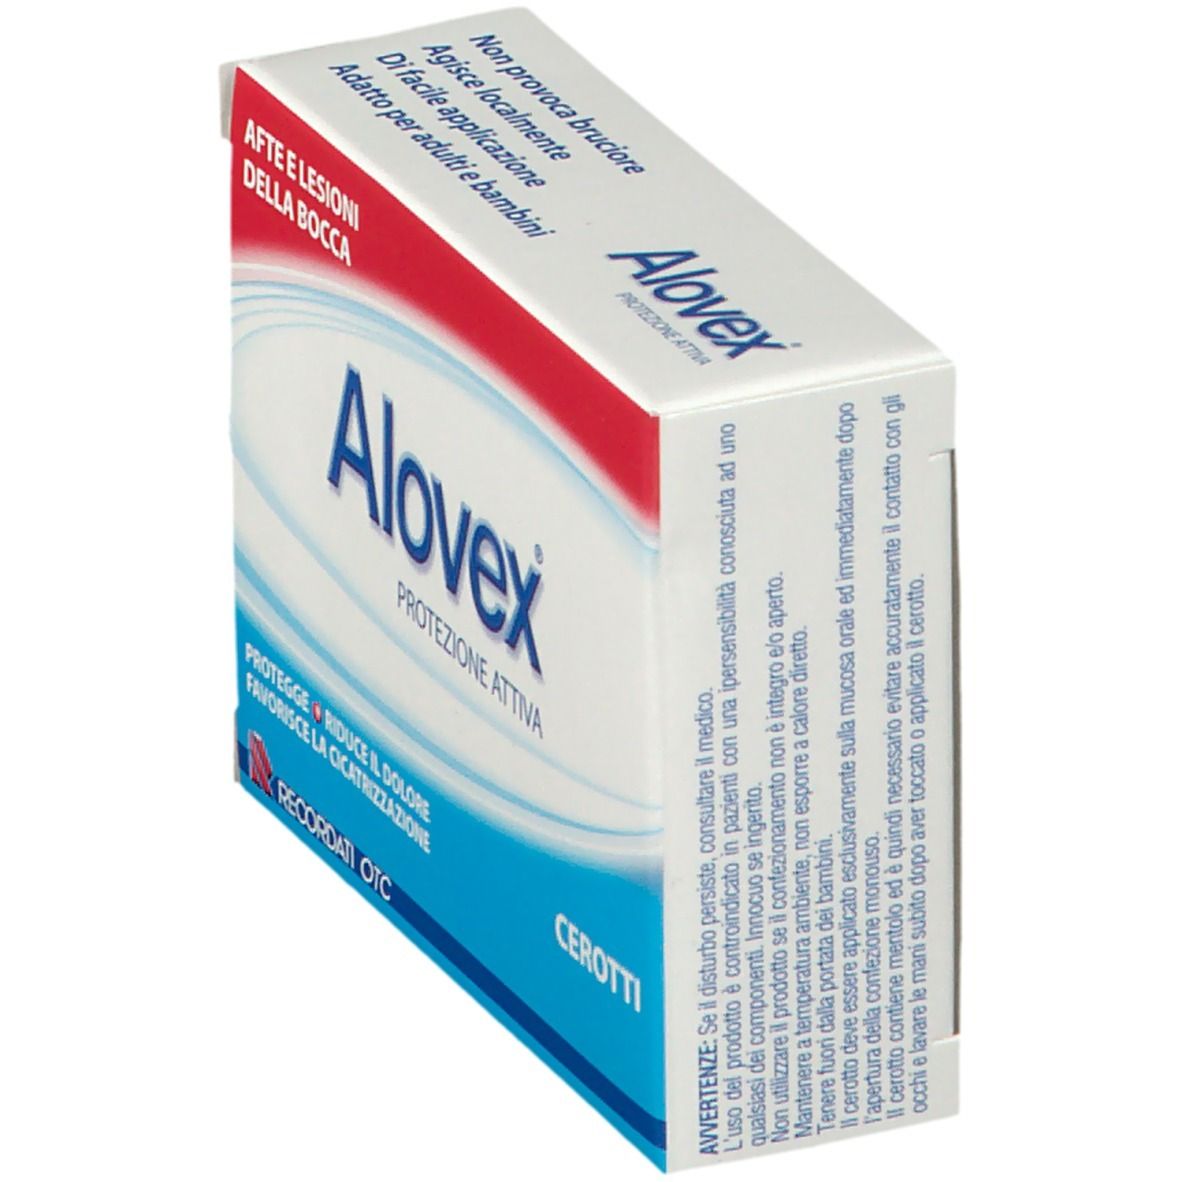 Alovex® Protezione Attiva Cerotti